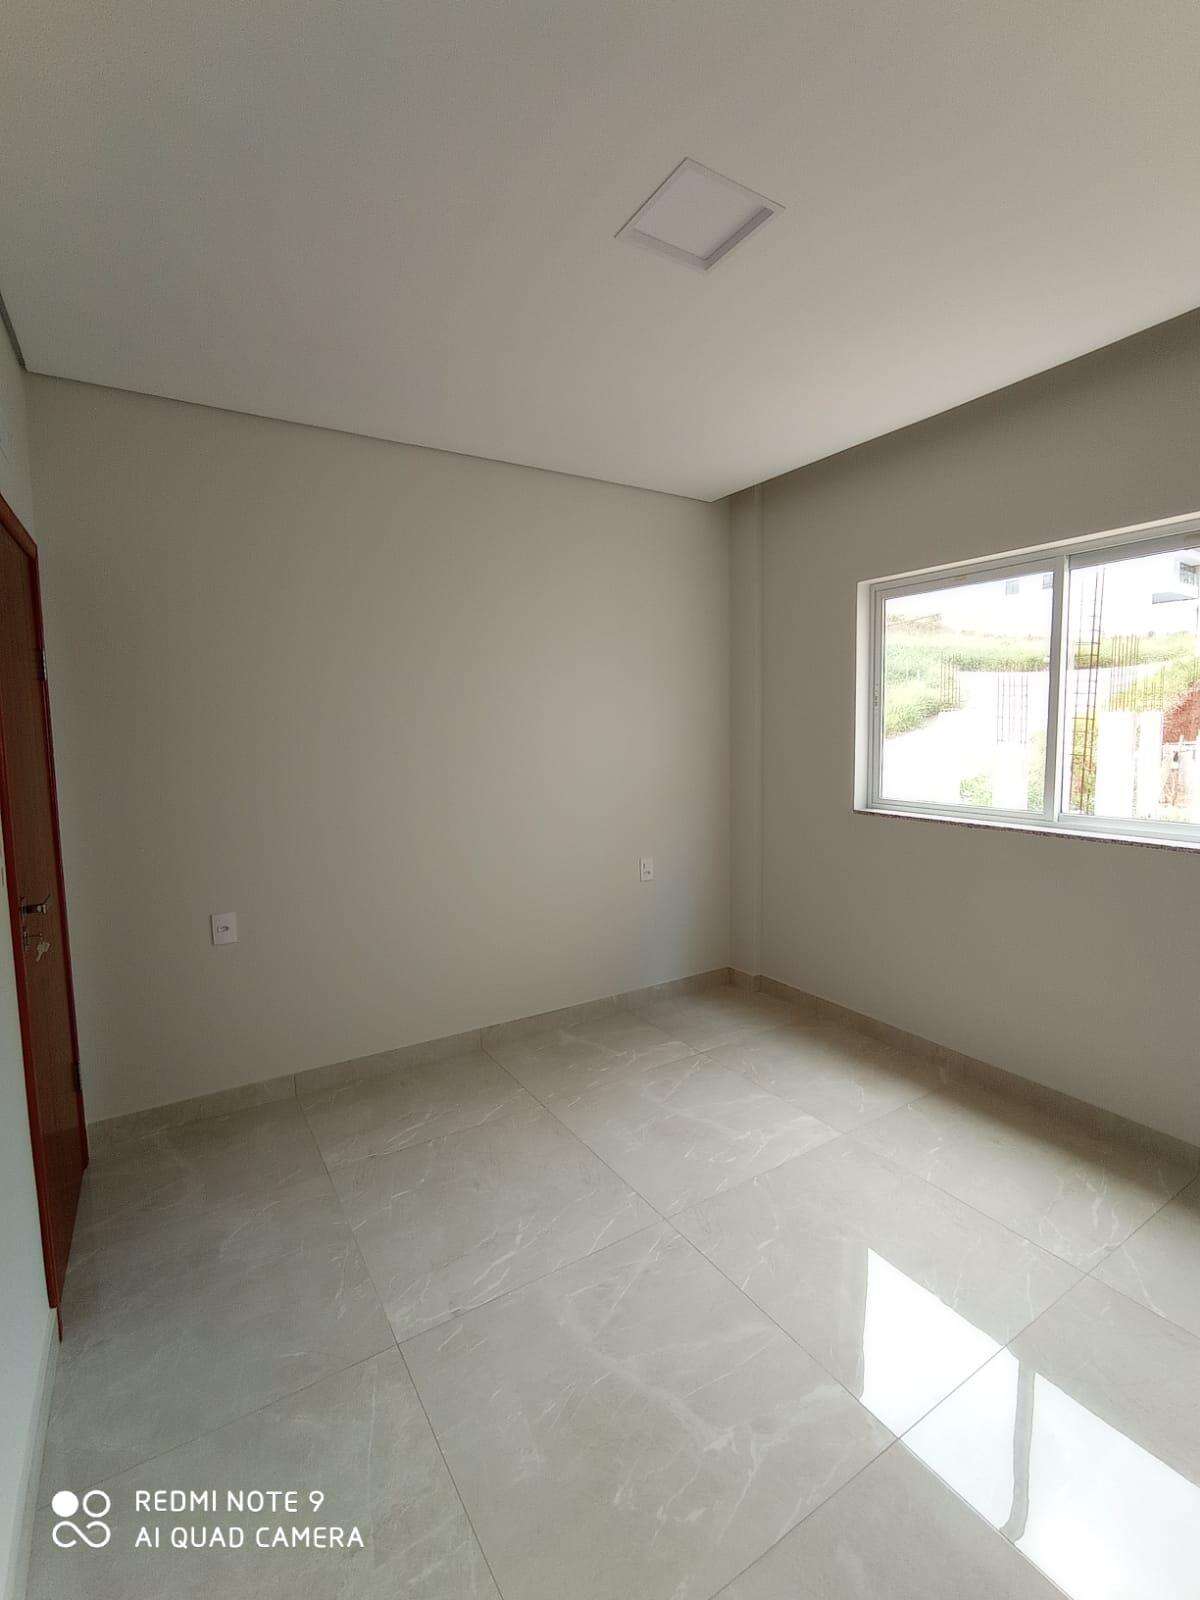 Apartamento 3 quartos para aluguel no Rafael José de Lima: 8908a130-e-whatsapp-image-2023-06-05-at-12.52.03-1.jpeg